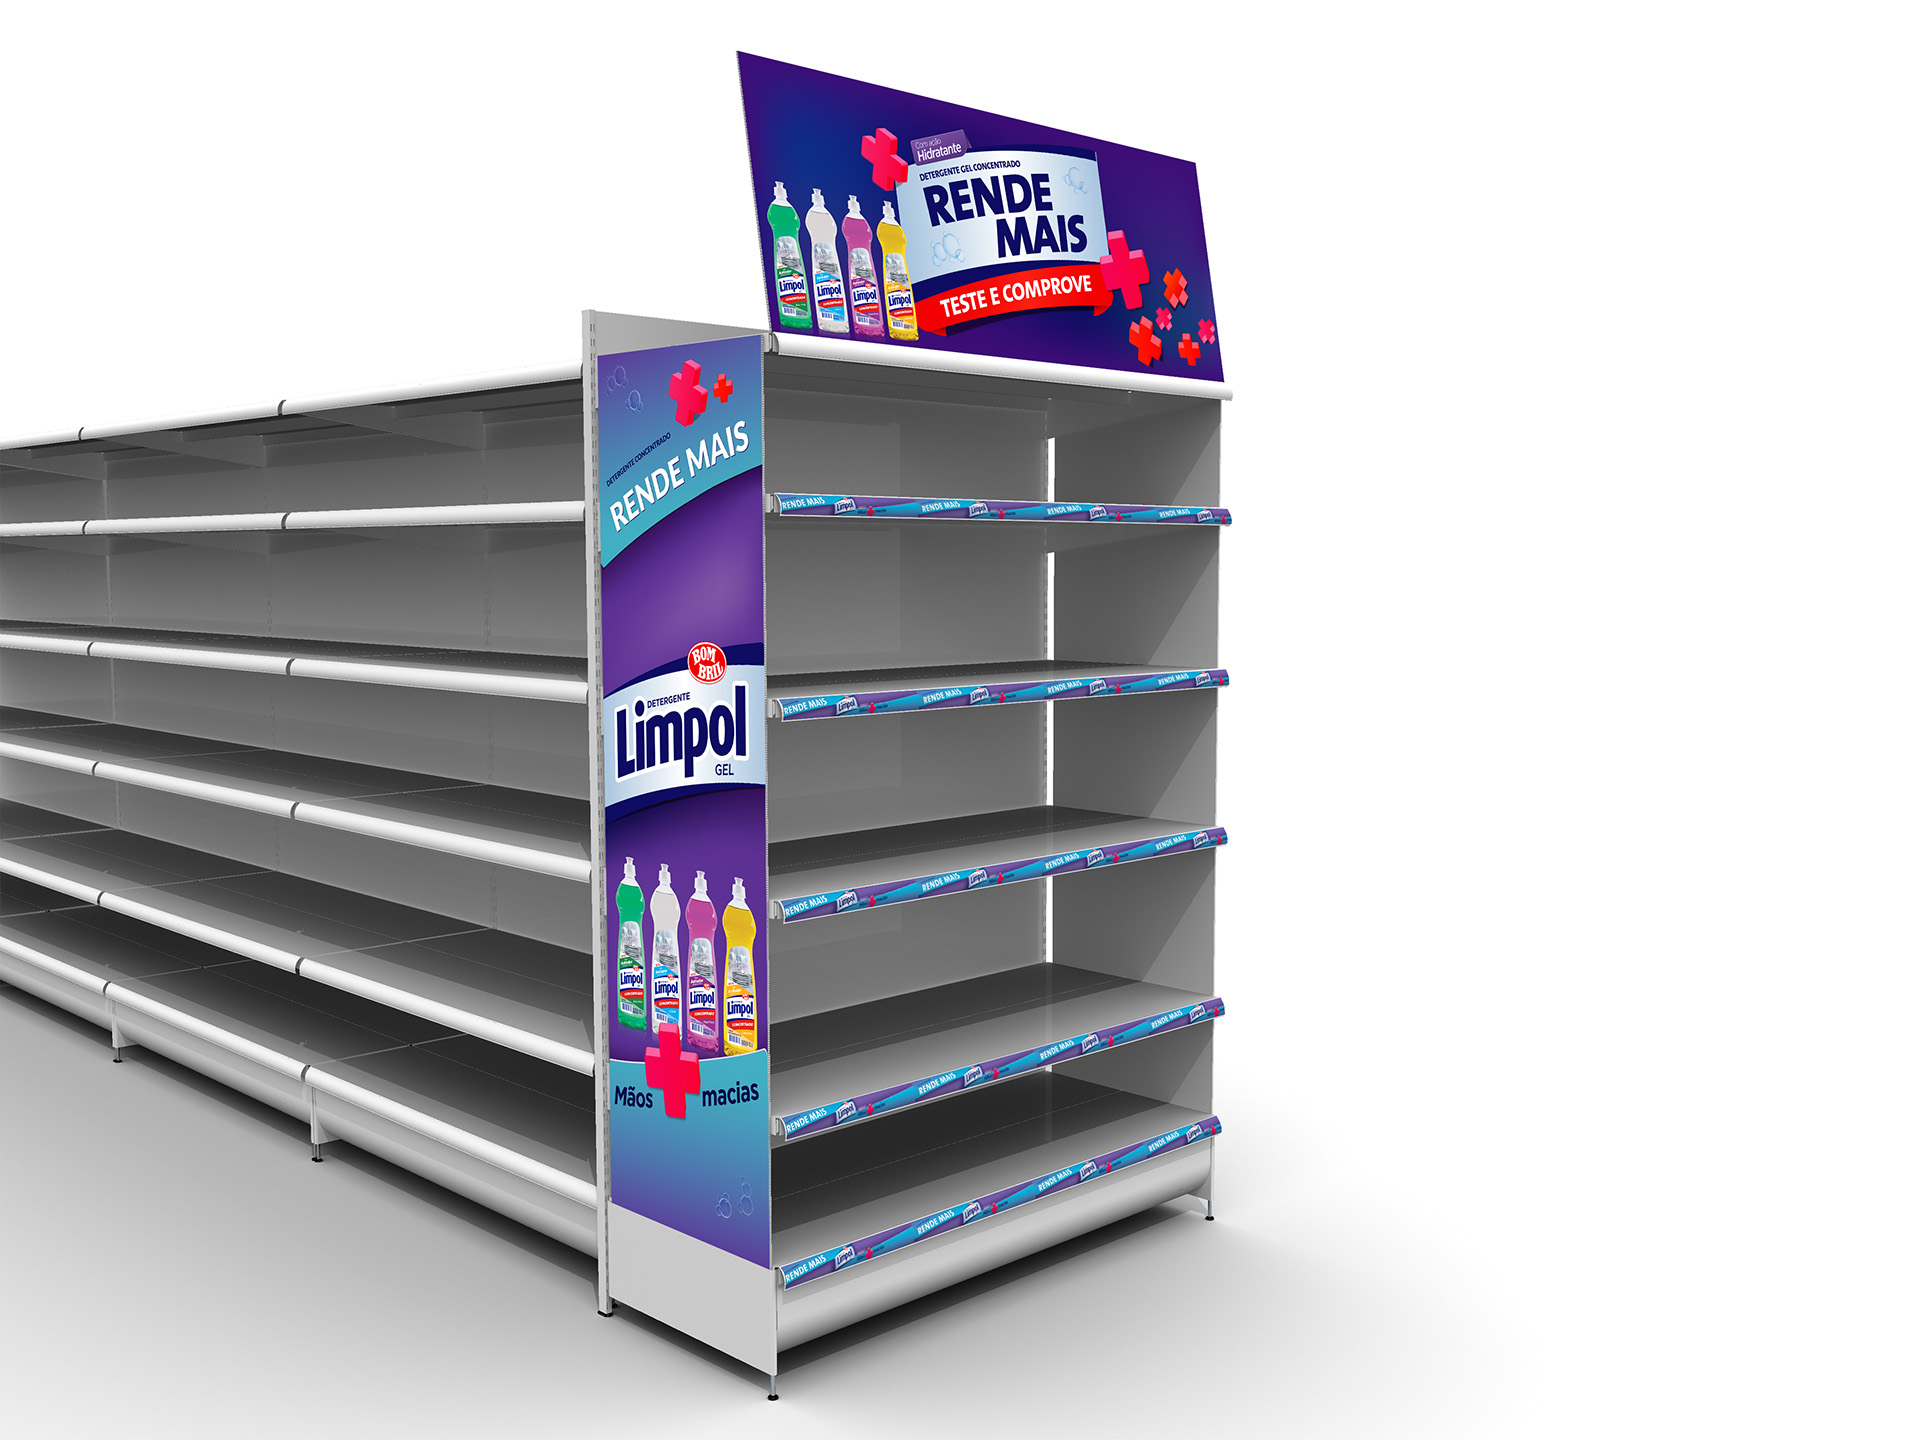 Imagem de ponta de gôndola de supermercado Limpol com material para PDV Bombril.